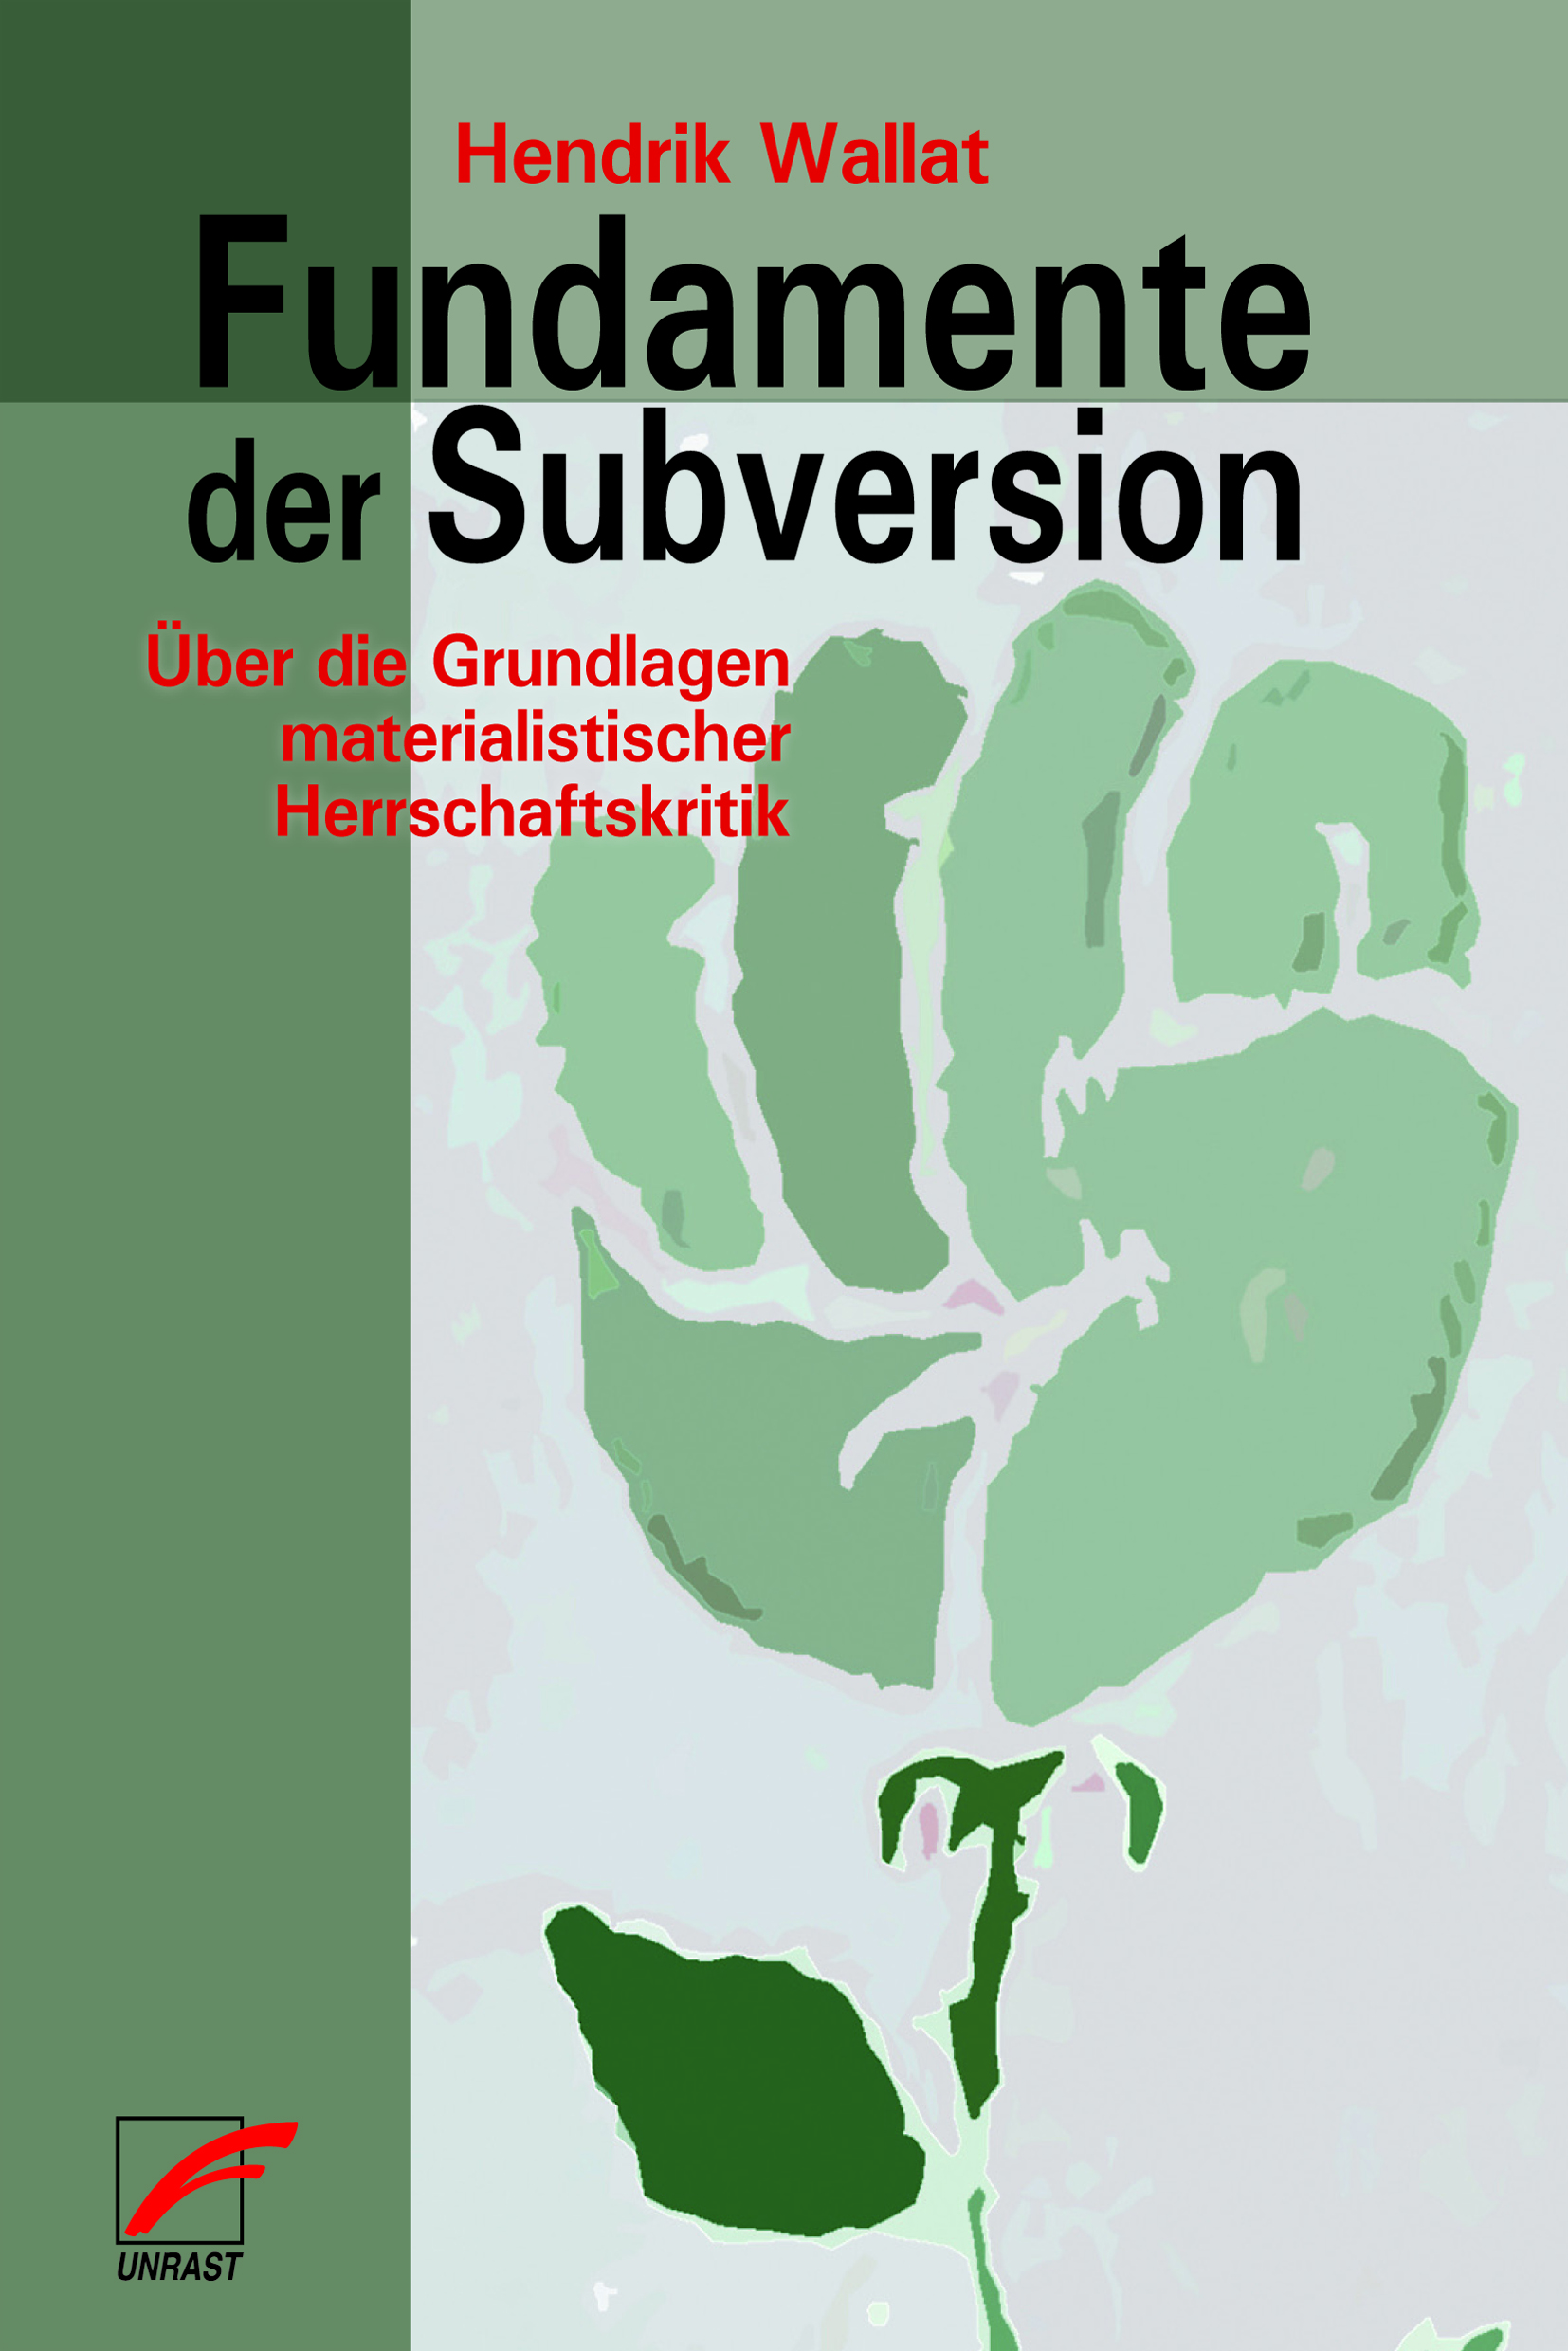 Lesekreis zu “Fundamente der Subversion – Über die Grundlagen materialistischer Herrschaftskritik”